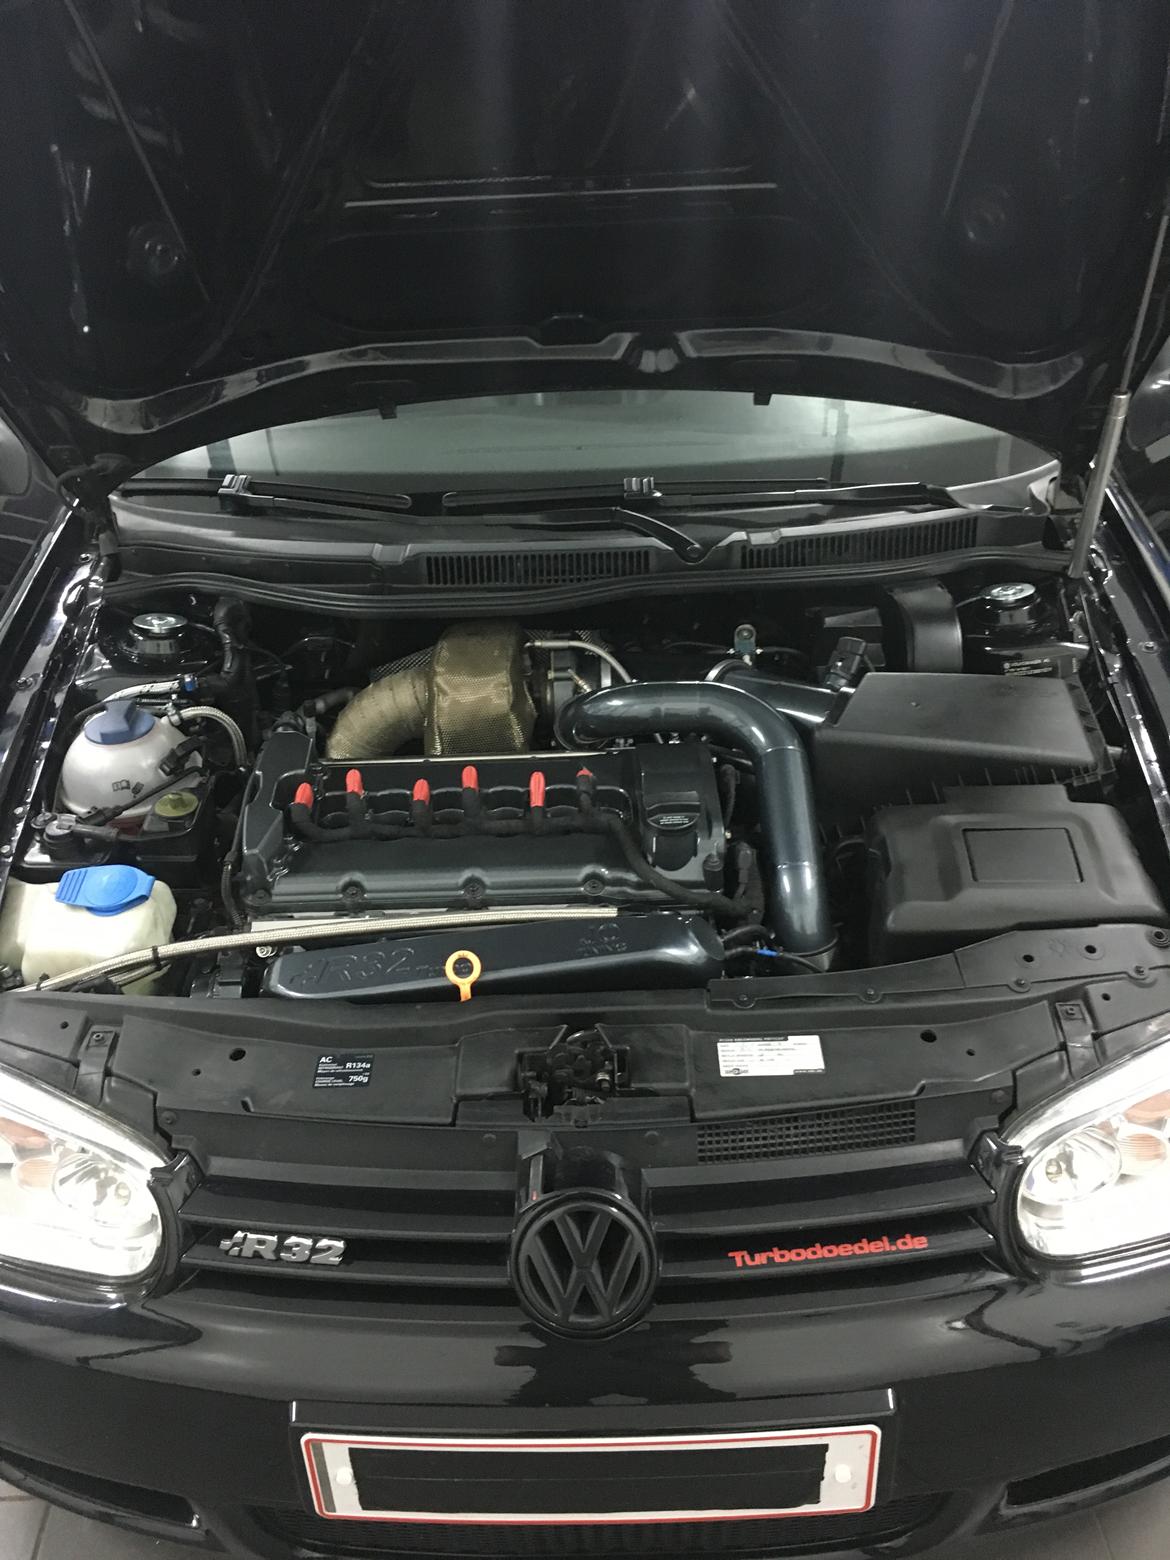 VW R32 turbo billede 5